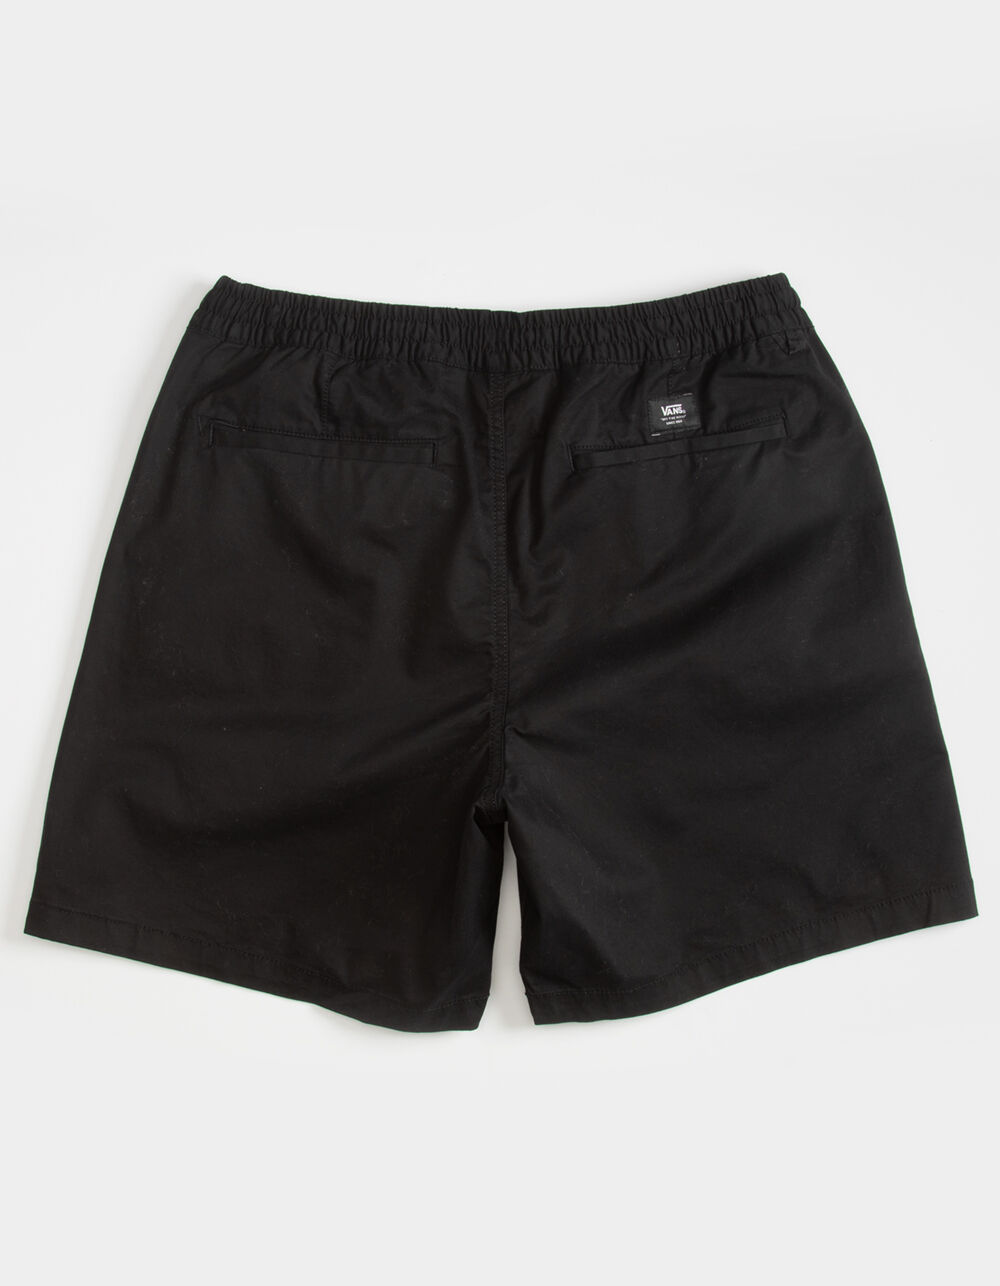 Vanta-Black Shorts 4.5”